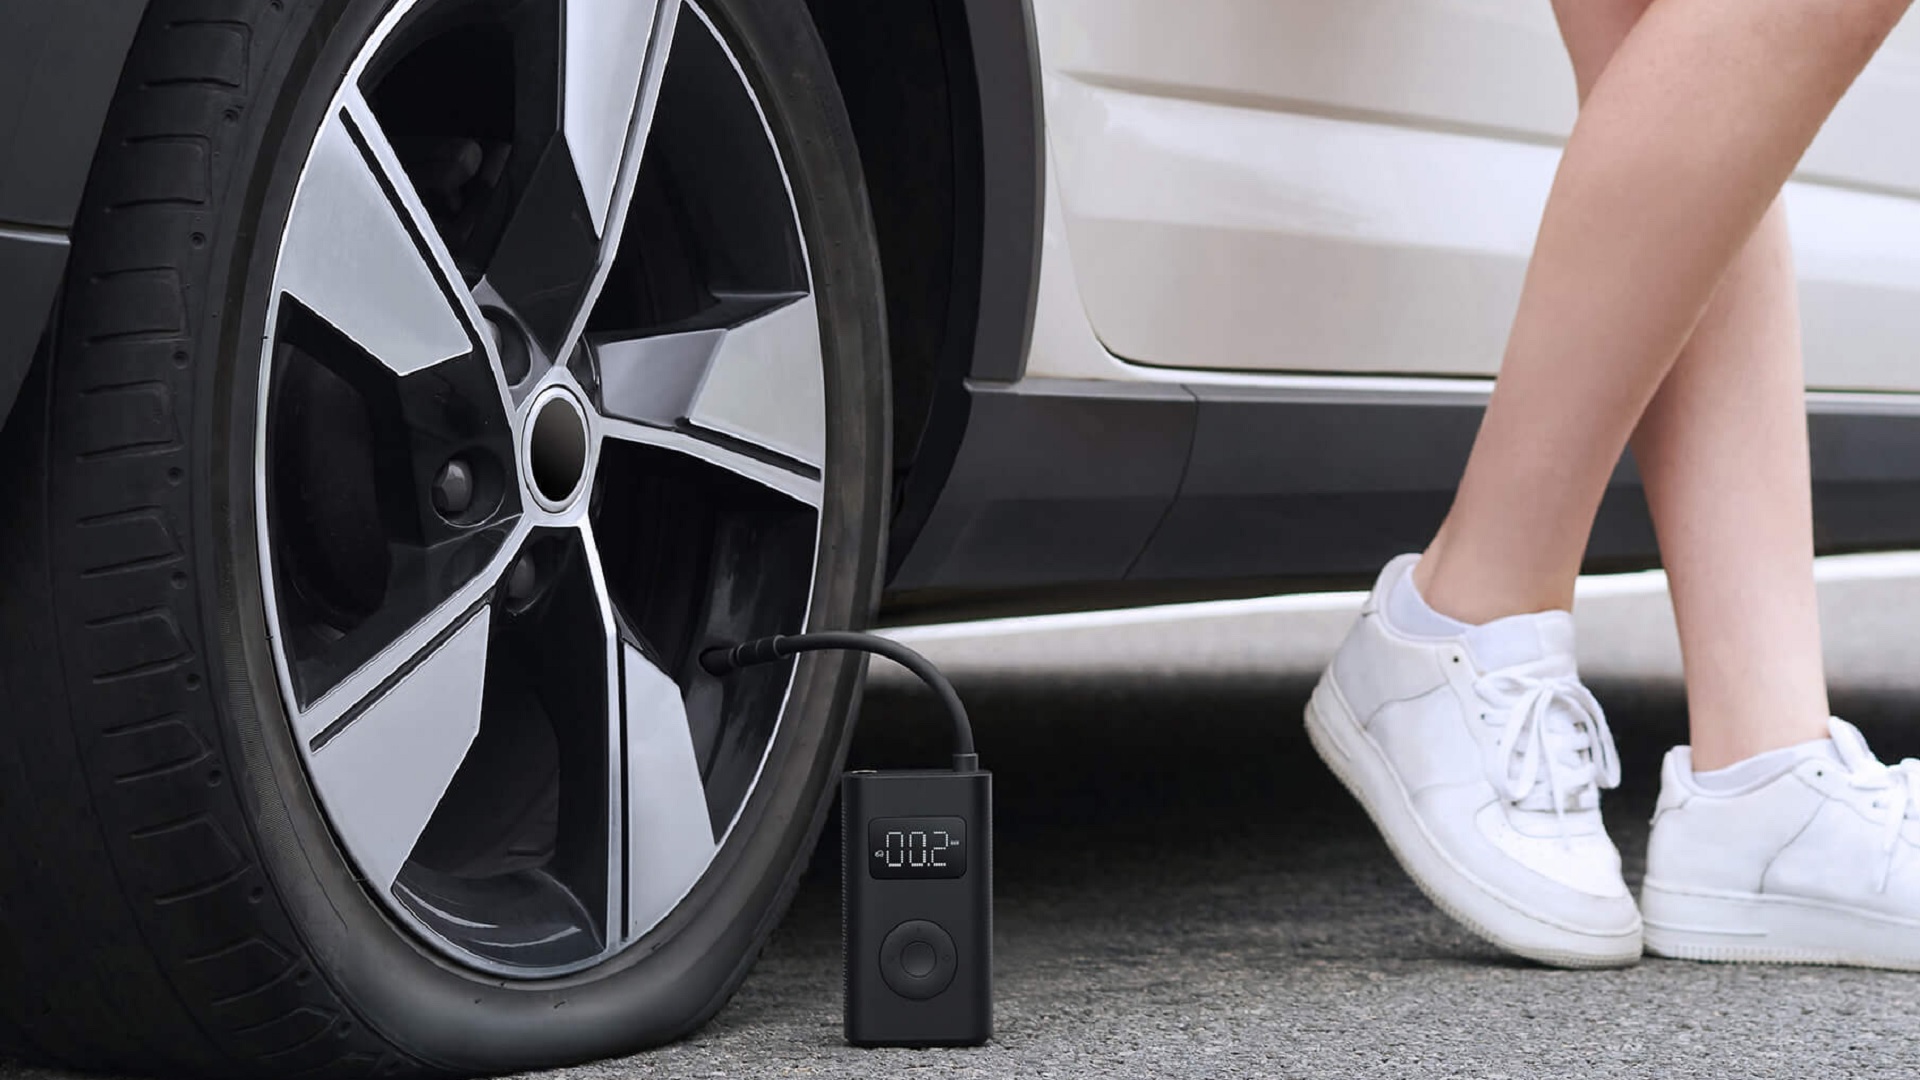 Électrique et portable, cette pompe Xiaomi en promotion est idéale pour  gonfler les pneus de sa trottinette rapidement - Numerama